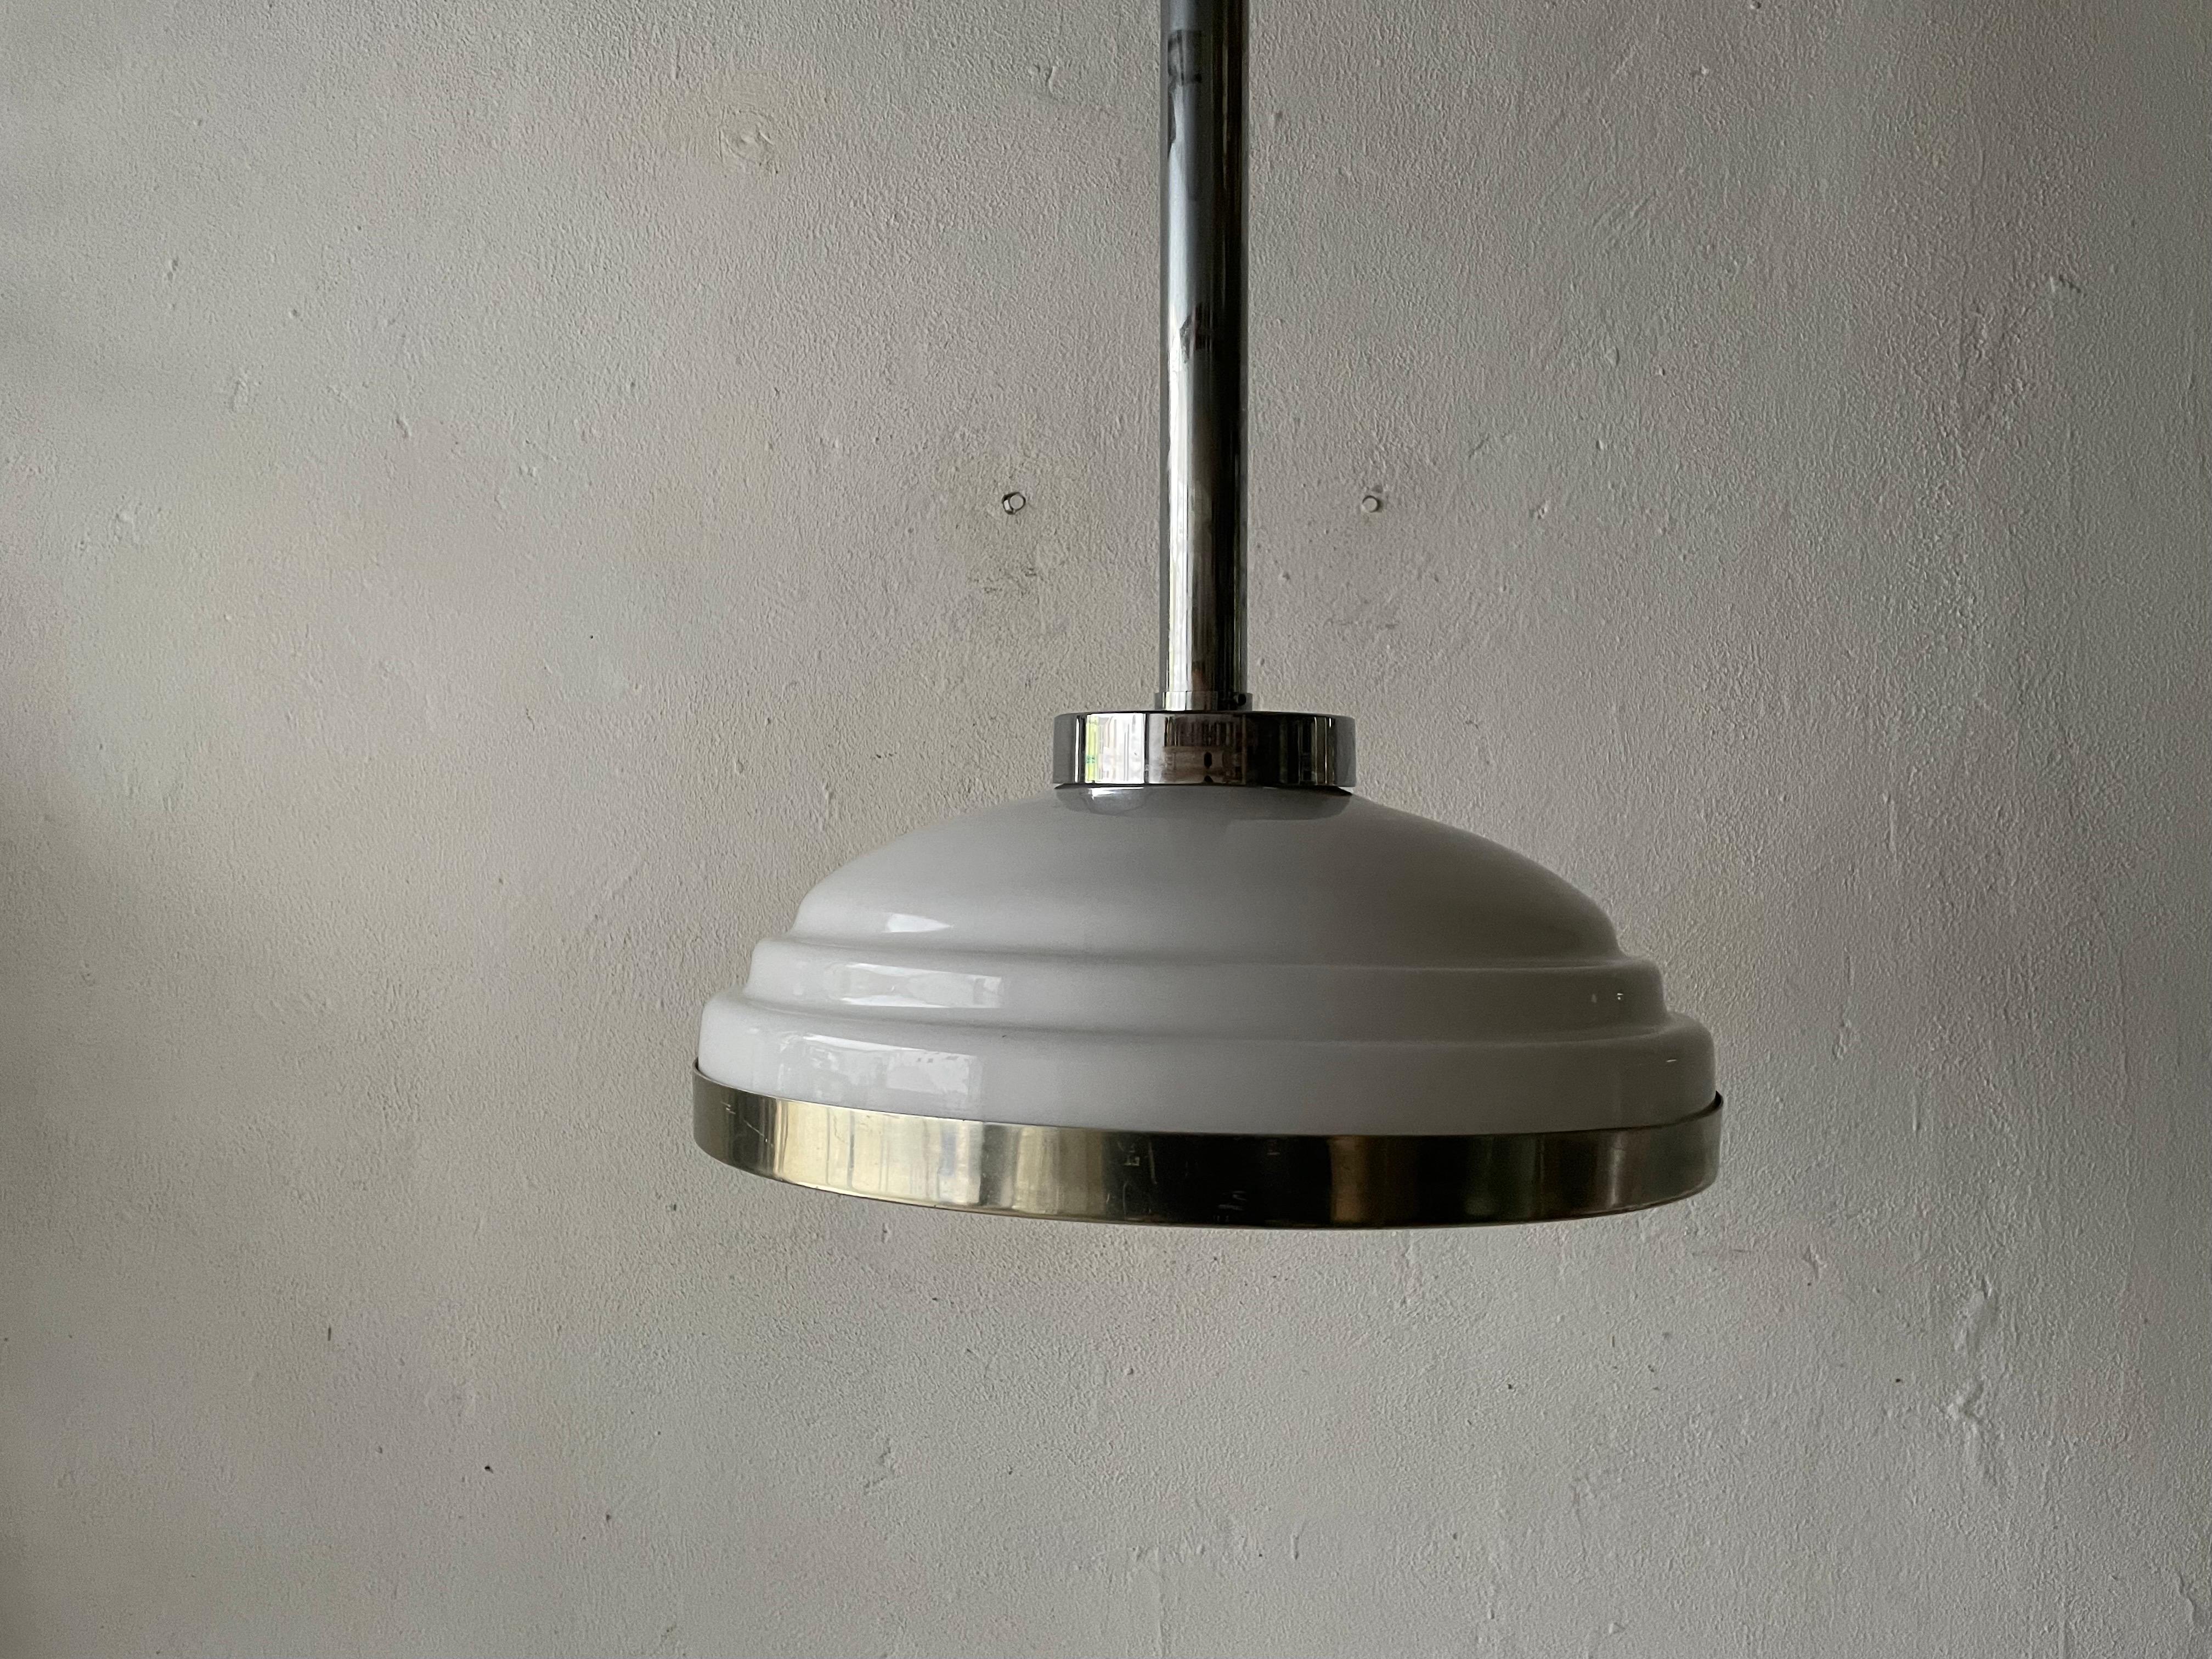 Deckenleuchte aus Opalglas und Chrom im Art déco-Stil, 1940er Jahre, Italien

Diese Lampe funktioniert mit 3x E14 innen, E27 außen

Verdrahtet und geeignet für die Verwendung mit 110V-220V in allen Ländern.

Bitte zögern Sie nicht, uns bei Fragen